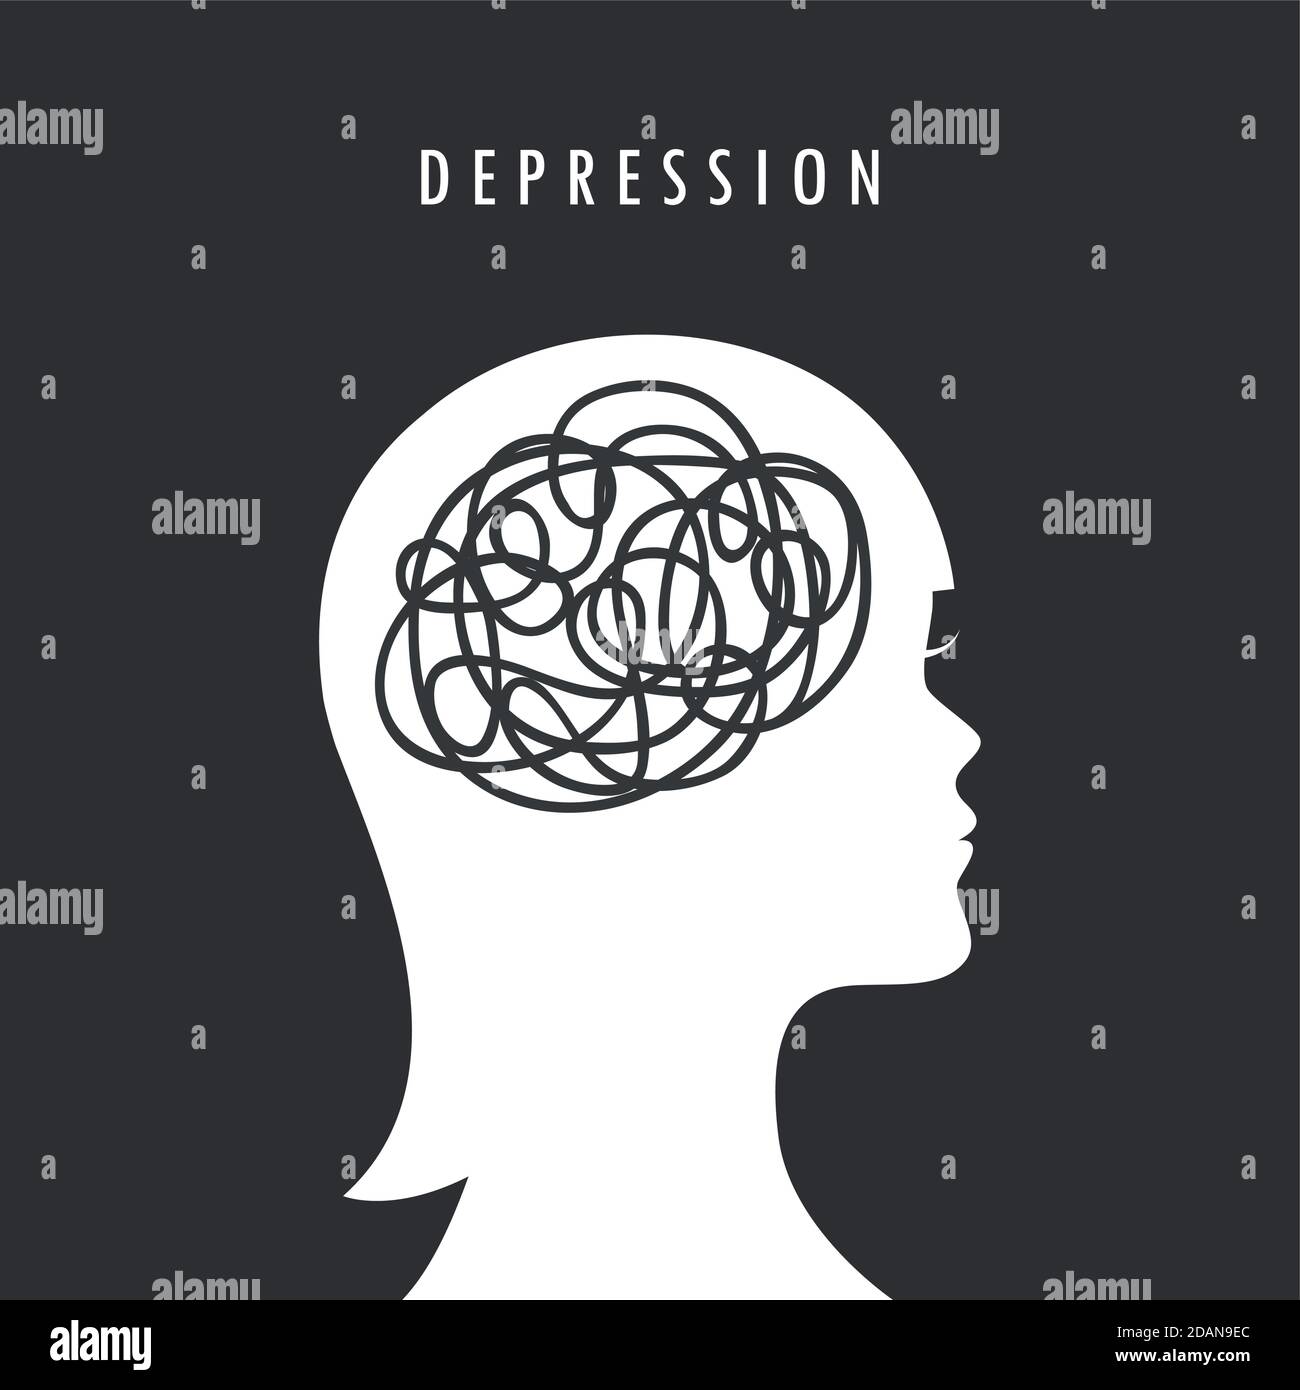 Psychische Gesundheit Depression Konzept weibliche Kopf Silhouette Vektor Illustration EPS10 Stock Vektor